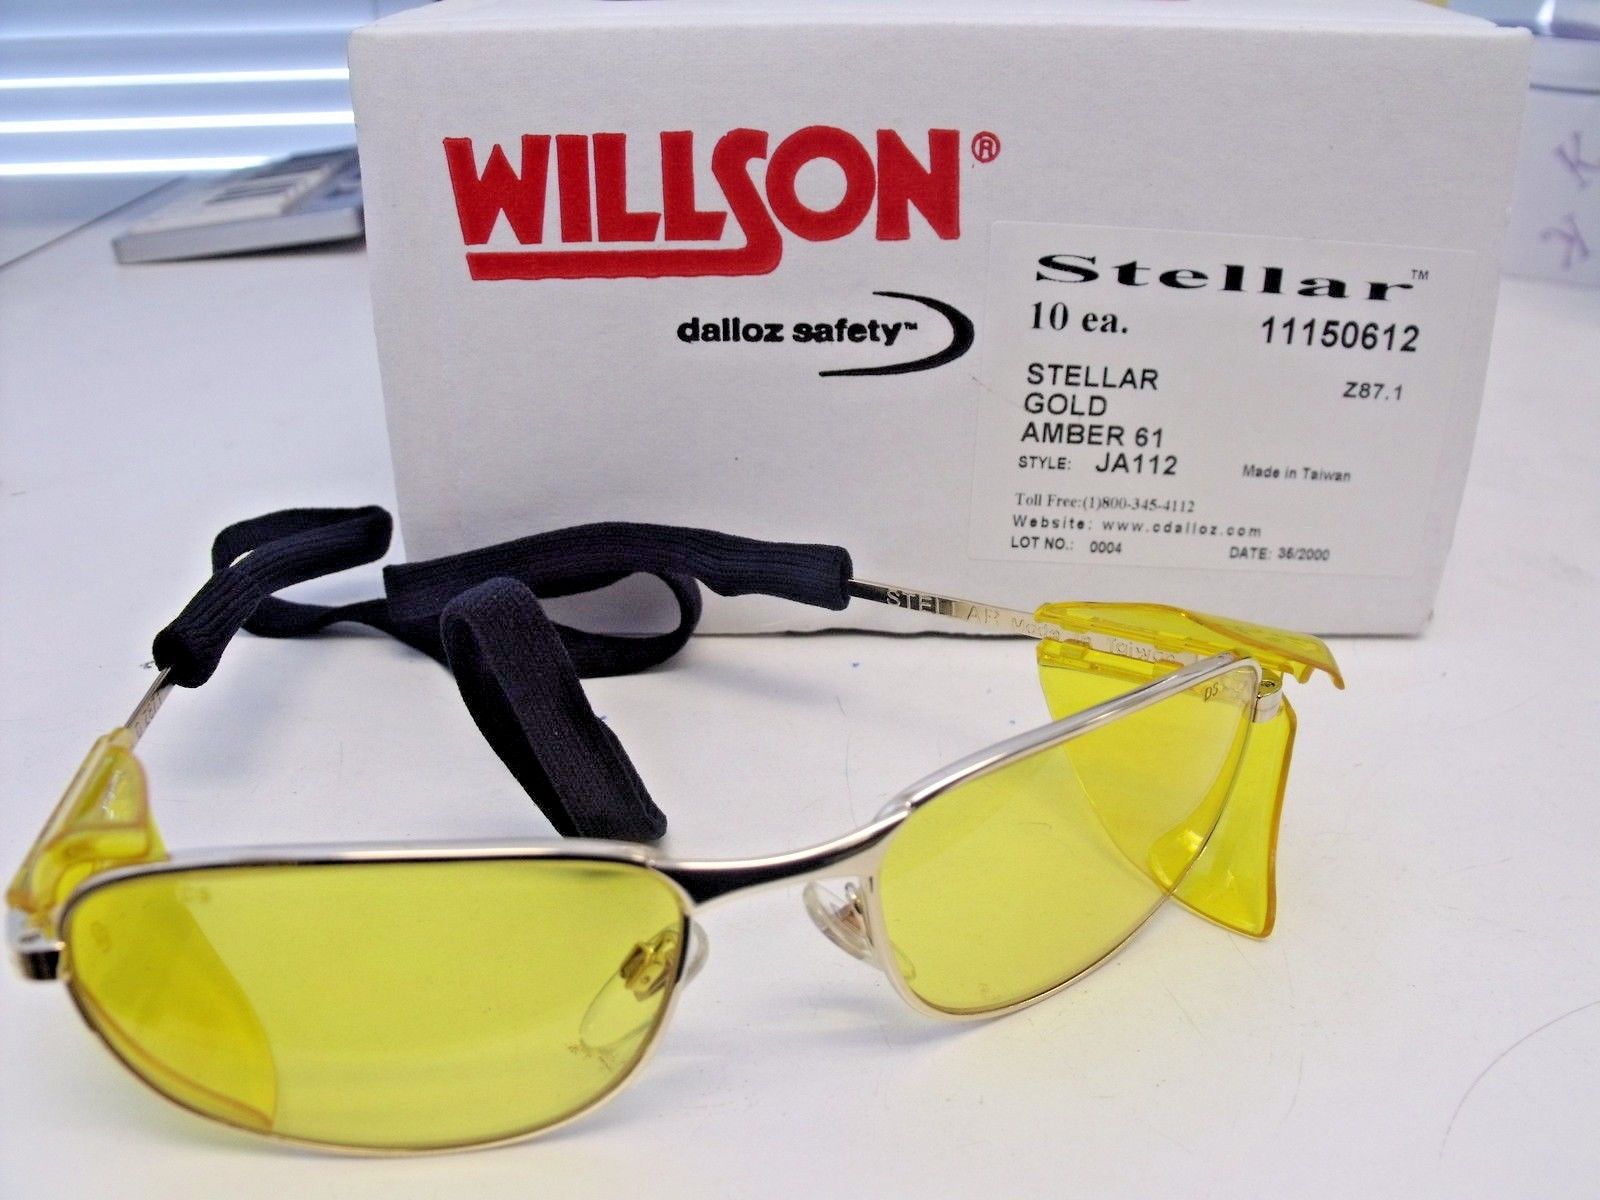 Willson 11150612 Stellar Frame Amber Lens Safety Glasses 10 Pairs